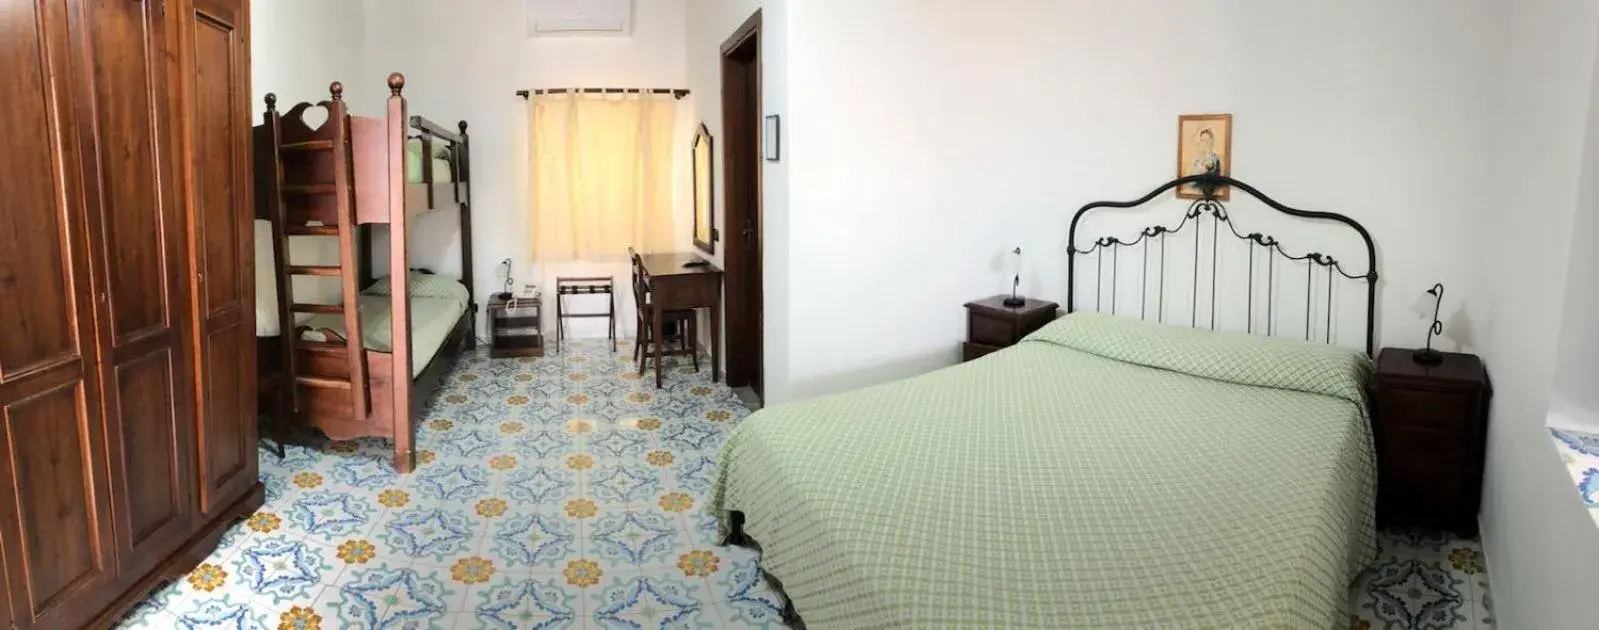 Bed in Hotel Villaggio Stromboli - isola di Stromboli